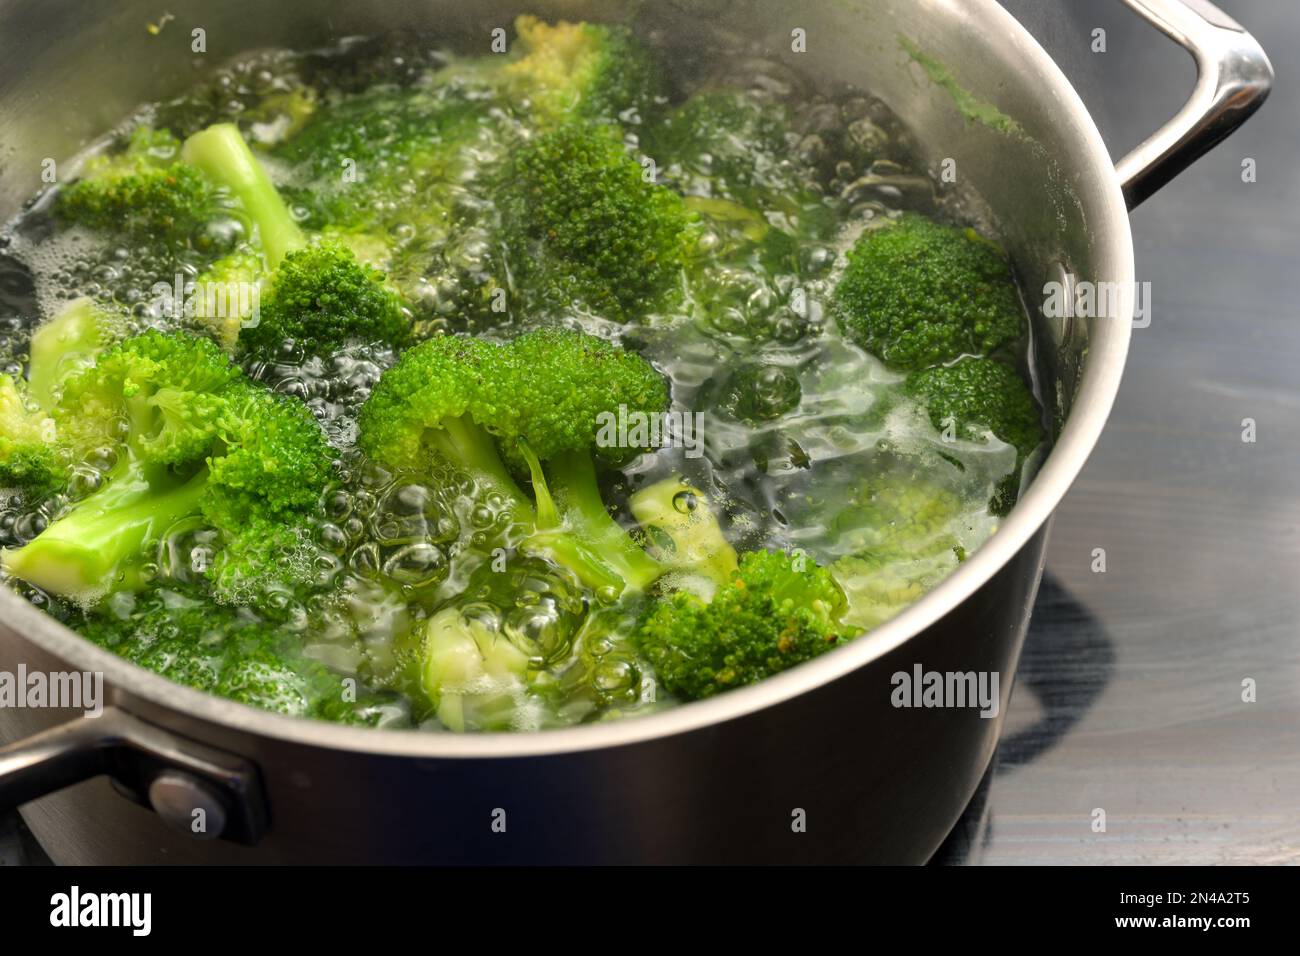 Brokkoli wird in kochendem Wasser in einem Edelstahltopf verborgen, um die frische grüne Farbe zu erhalten, gesundes Kochen mit Gemüse, Kopierraum, selektiert Stockfoto